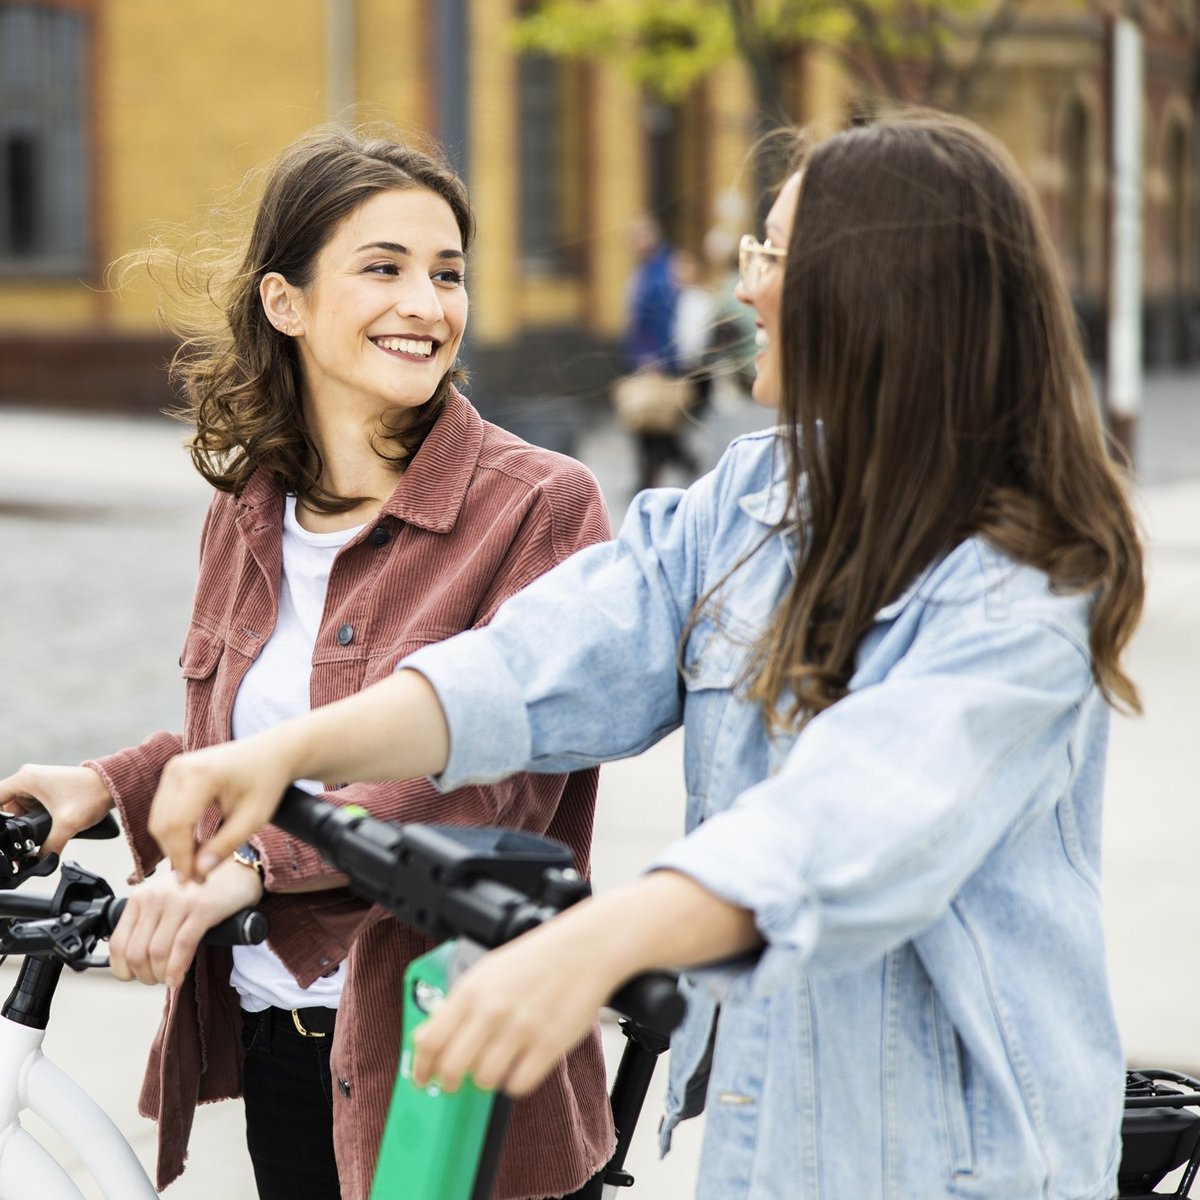 Zwei Frauen auf Fahrrad und E-Scooter unterhalten sich